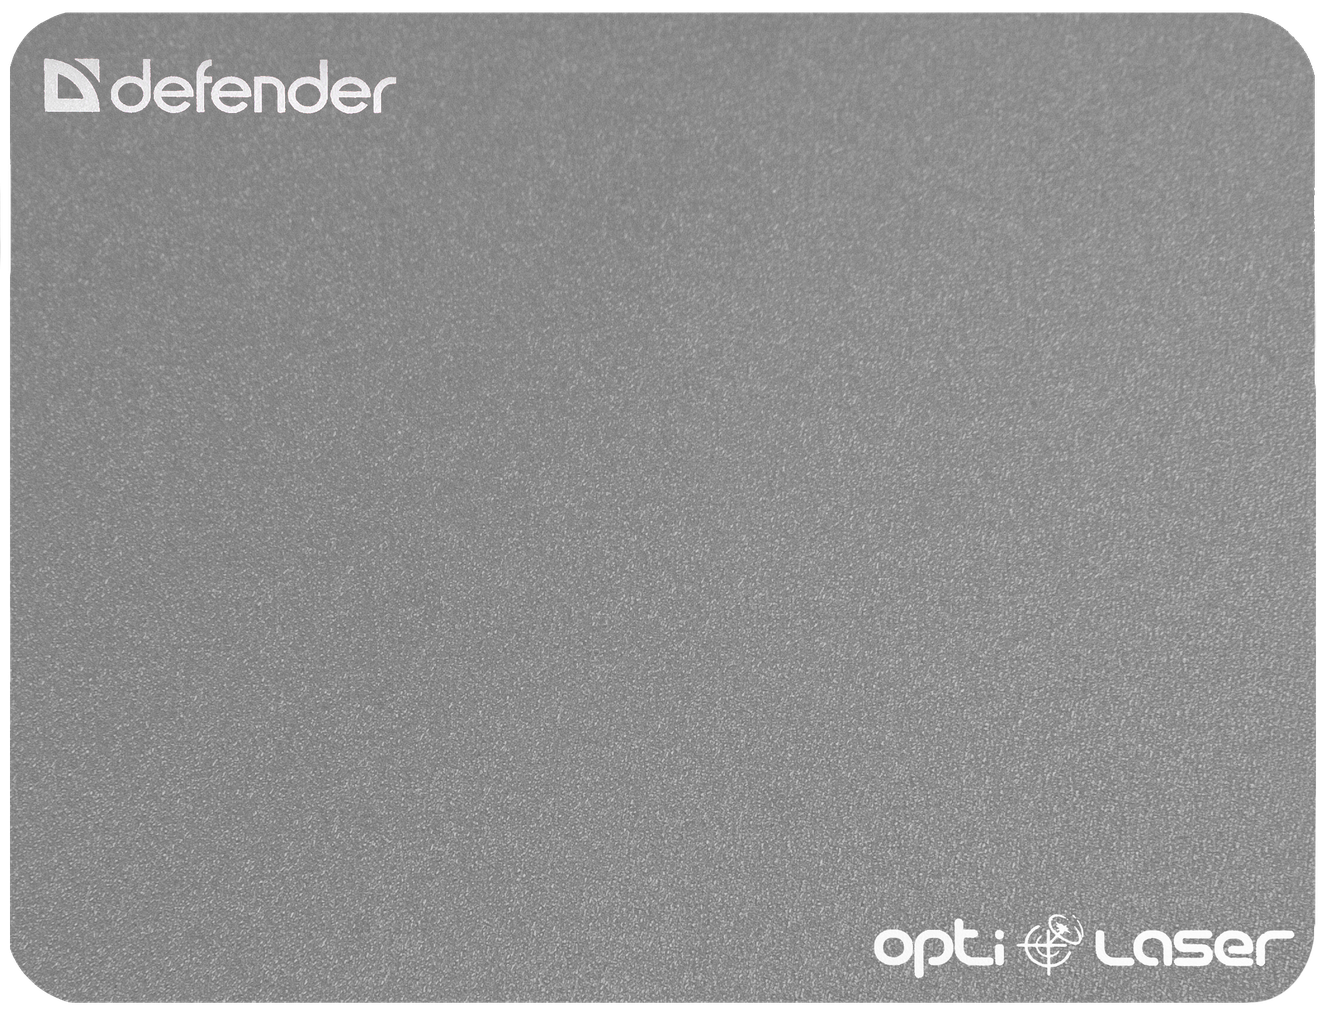 Defender Silver opti-laser